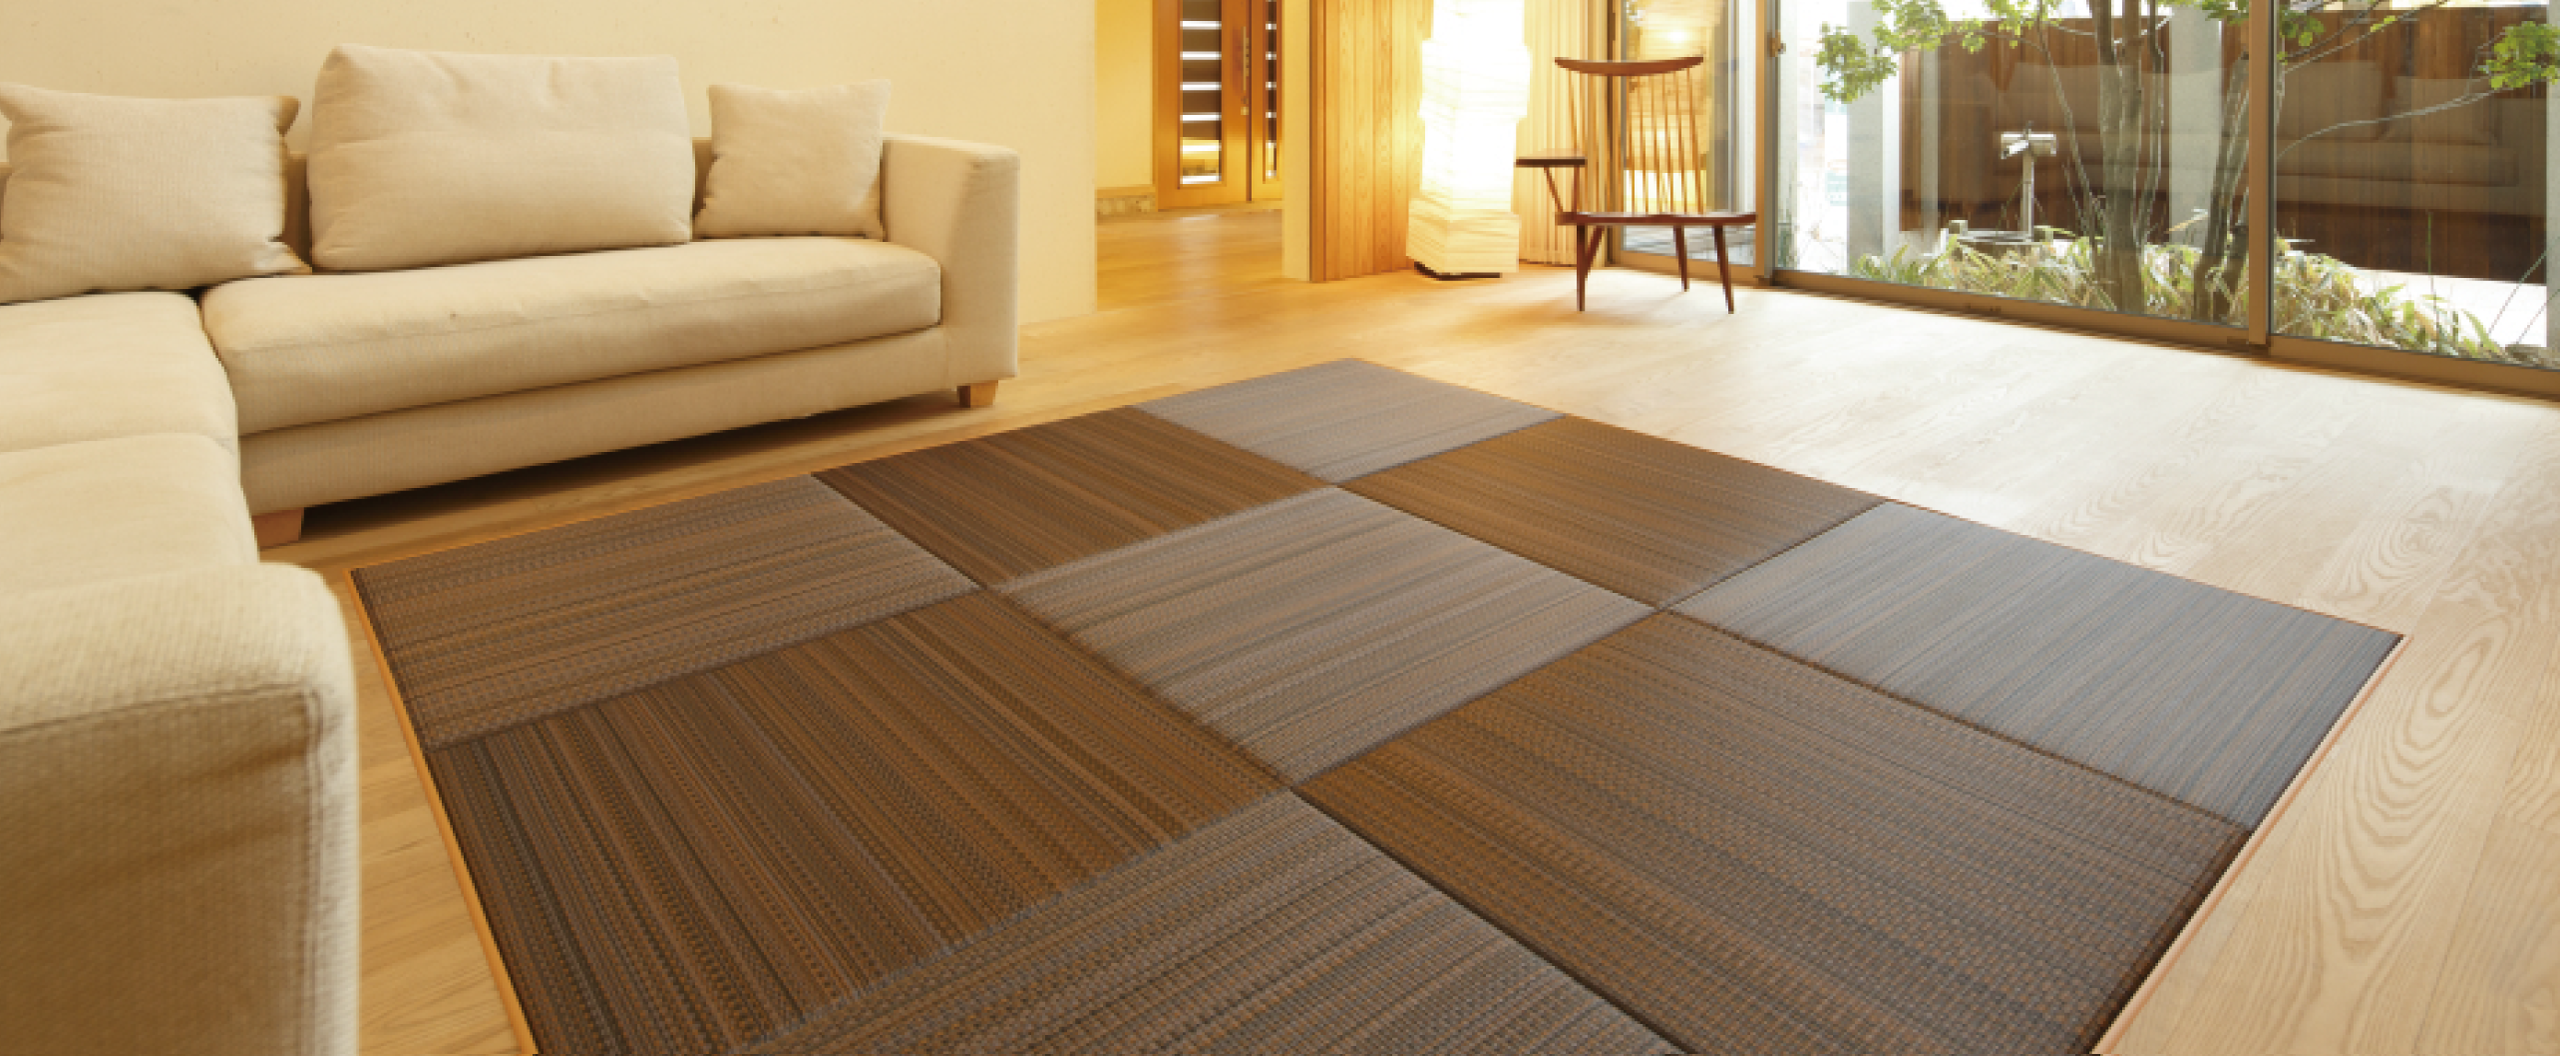 薄畳・フローリング畳・健康畳のこまつや畳値段ネットの作業風景メイン画像